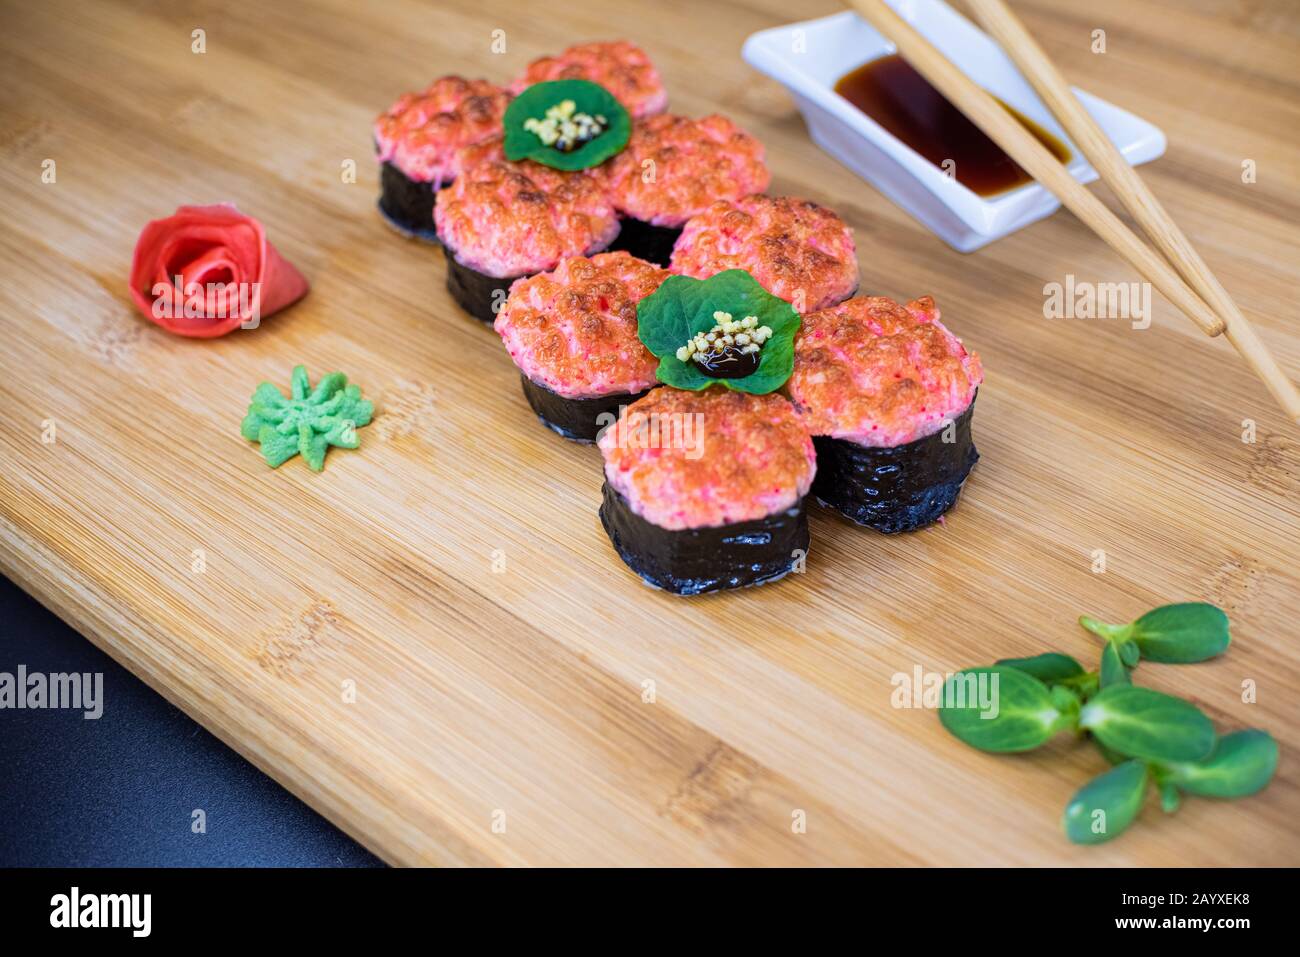 Les sushis japonais sont servis sur une planche en bois. Saumon, riz, wasabi, gingembre, baguettes la cuisine japonaise Hashi. Sauce soja Banque D'Images